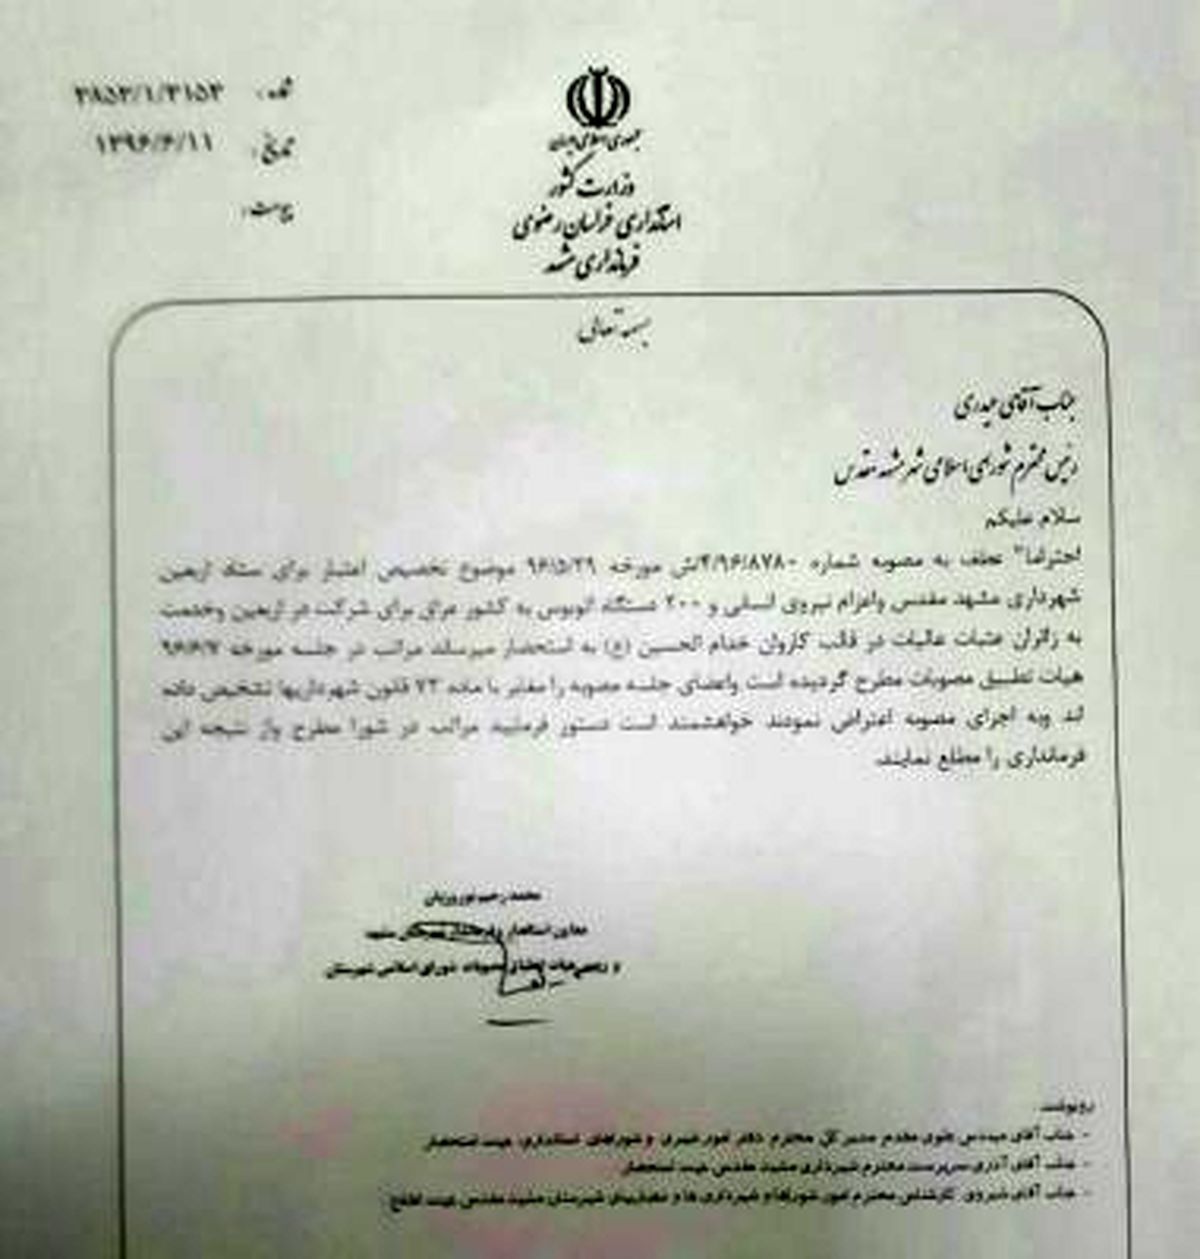 شهرداری مشهد اعتباری به ستاد اربعین نخواهد داد/ فرمانداری مصوبه شورای قبلی را رد کرد